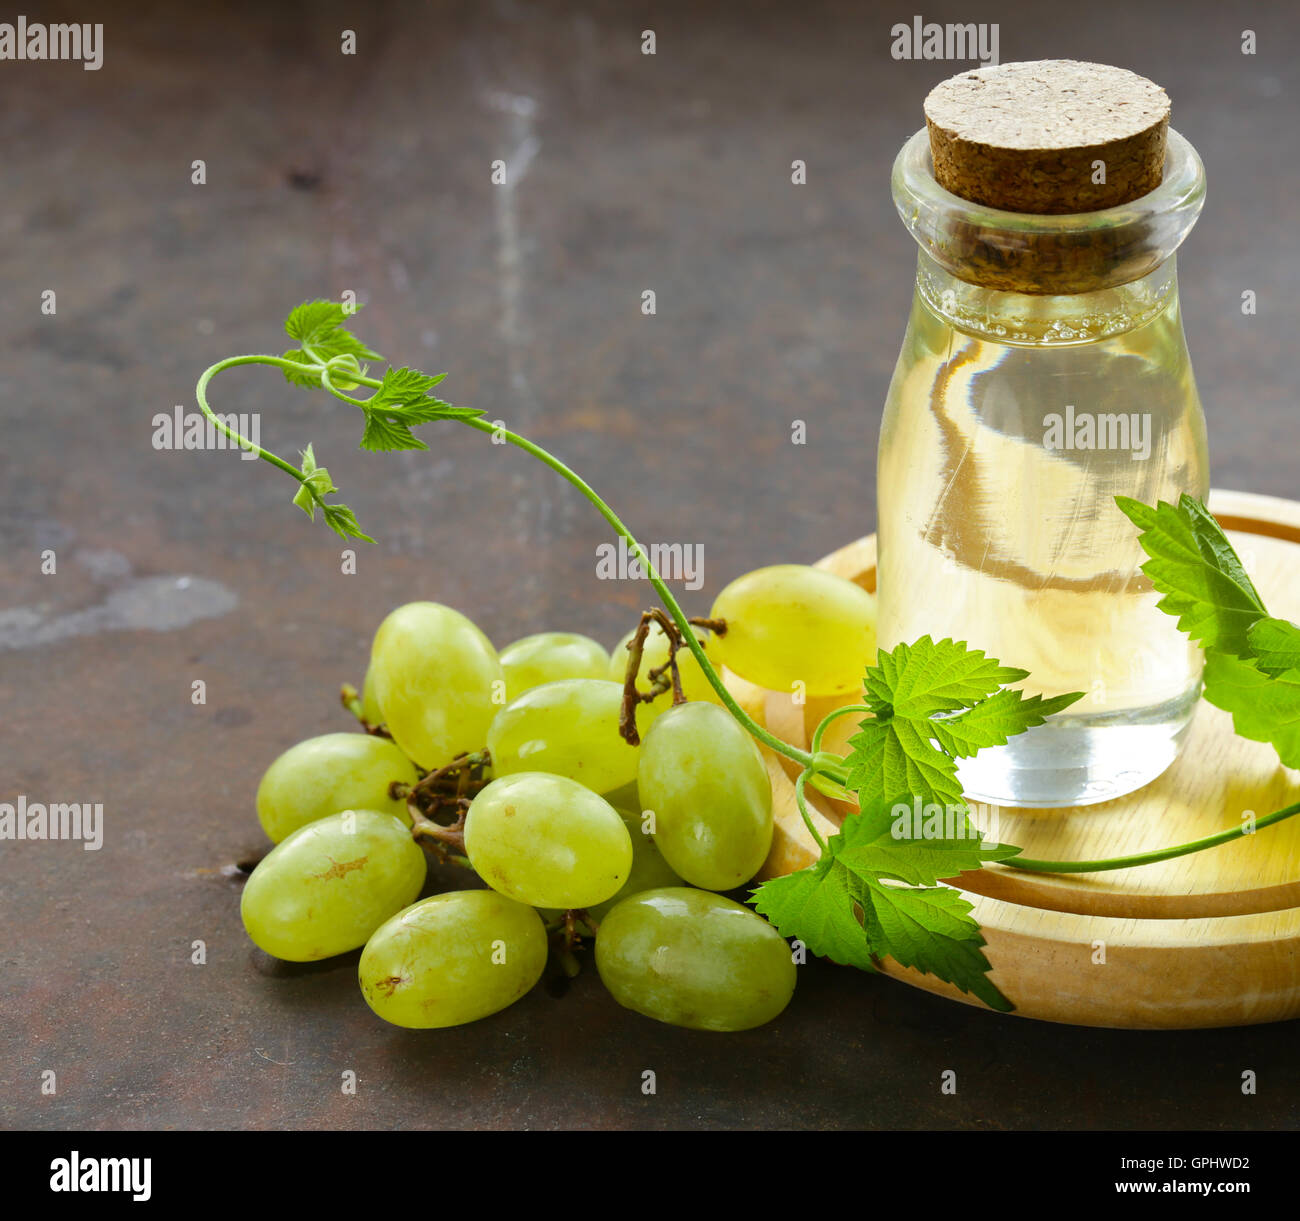 Масло виноградной косточки польза и вред